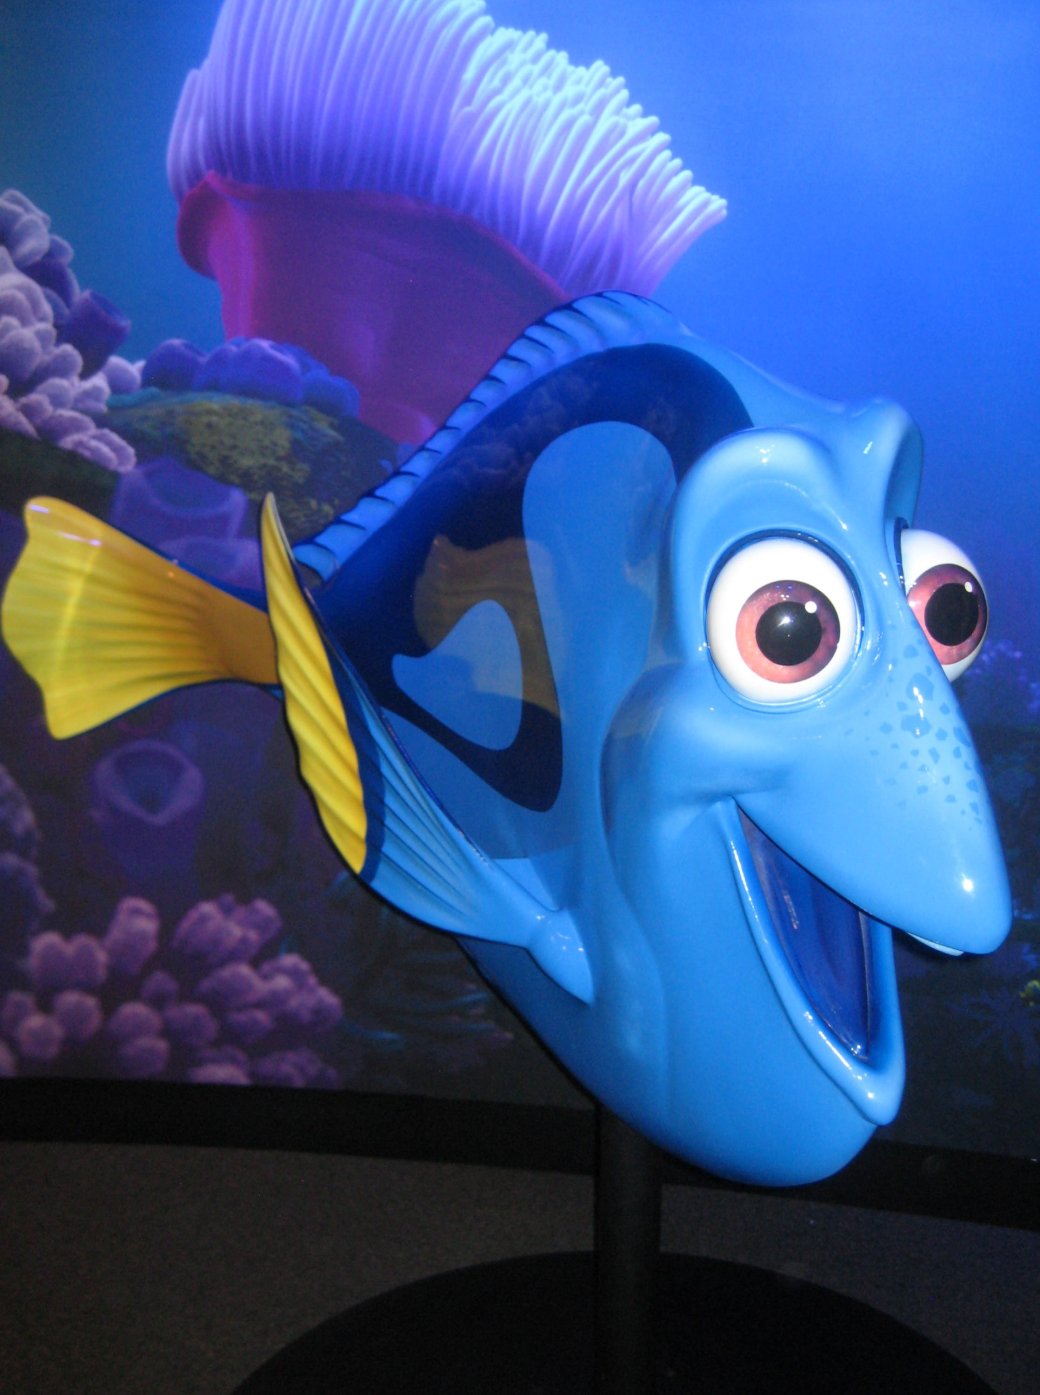 Галерея Выставка Pixar показывает создание героев любимых мультфильмов - 5 фото